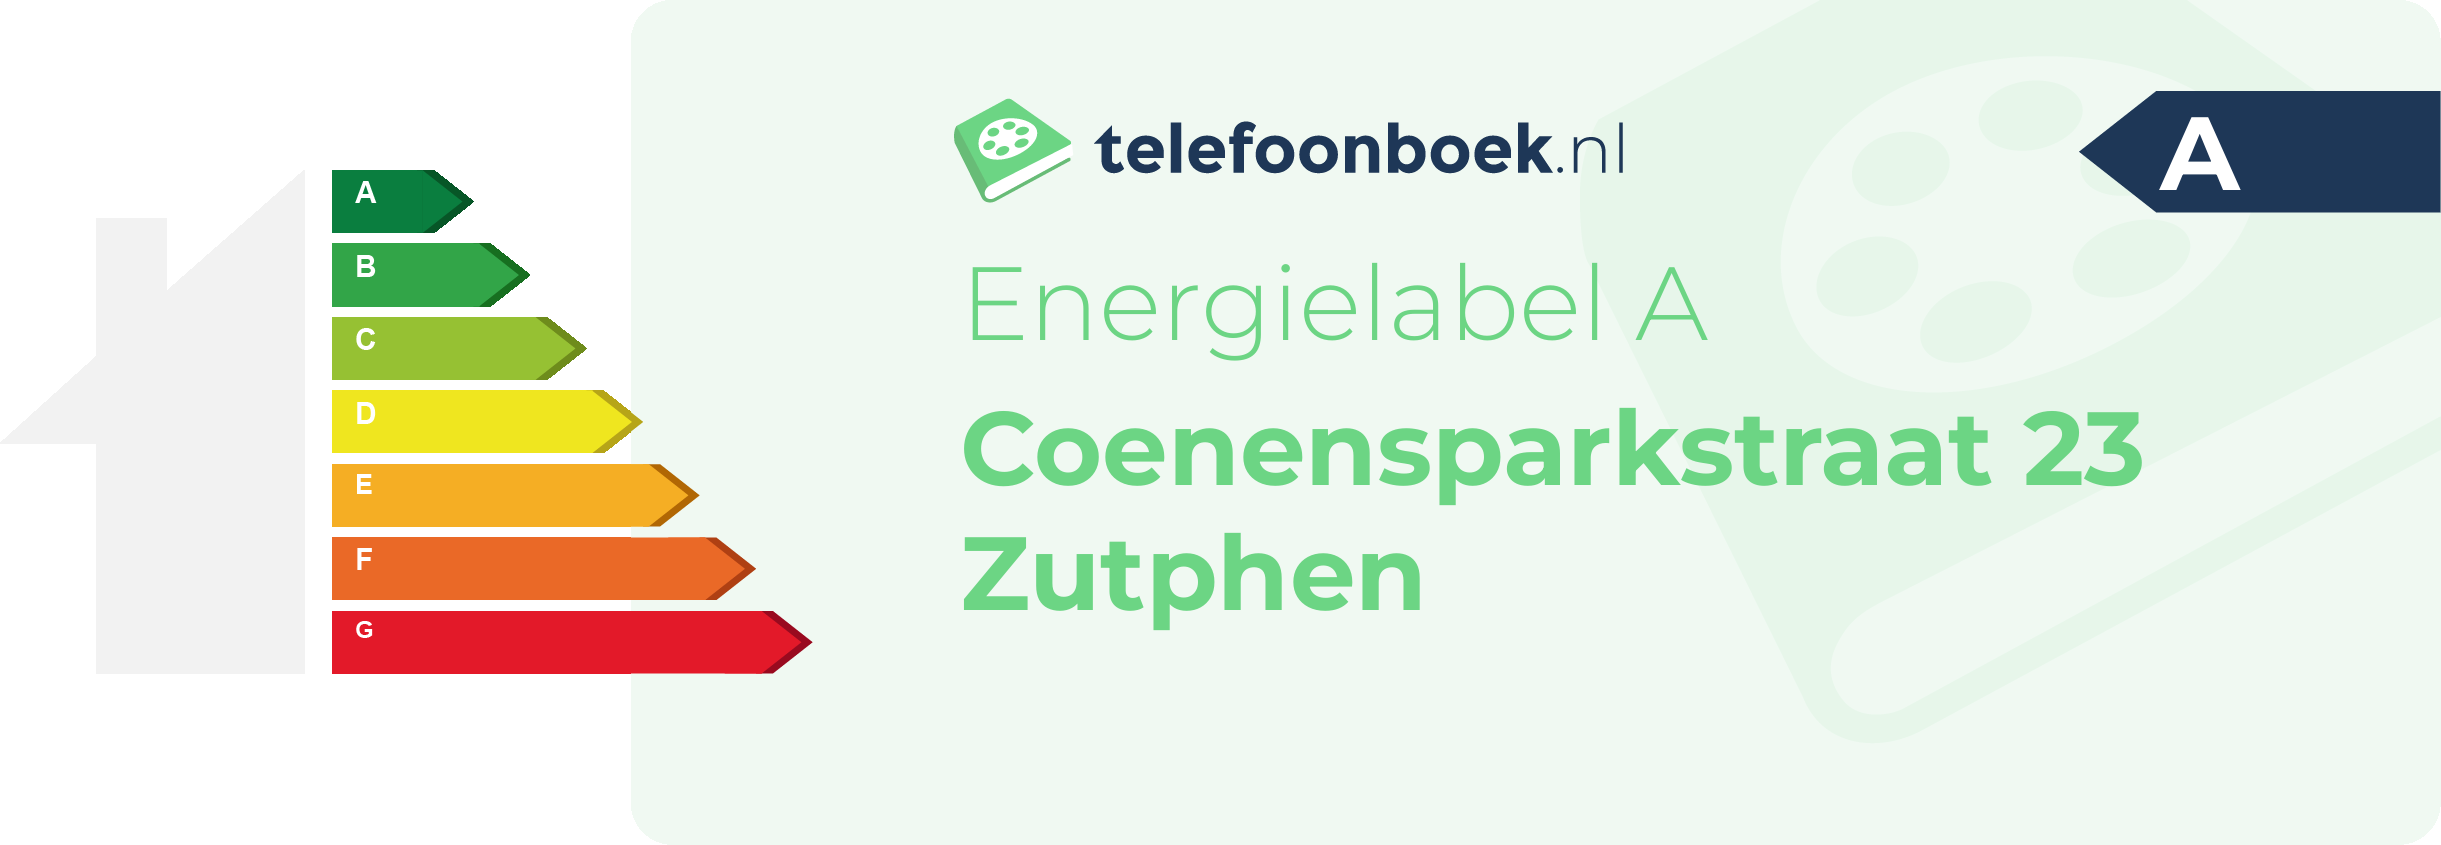 Energielabel Coenensparkstraat 23 Zutphen